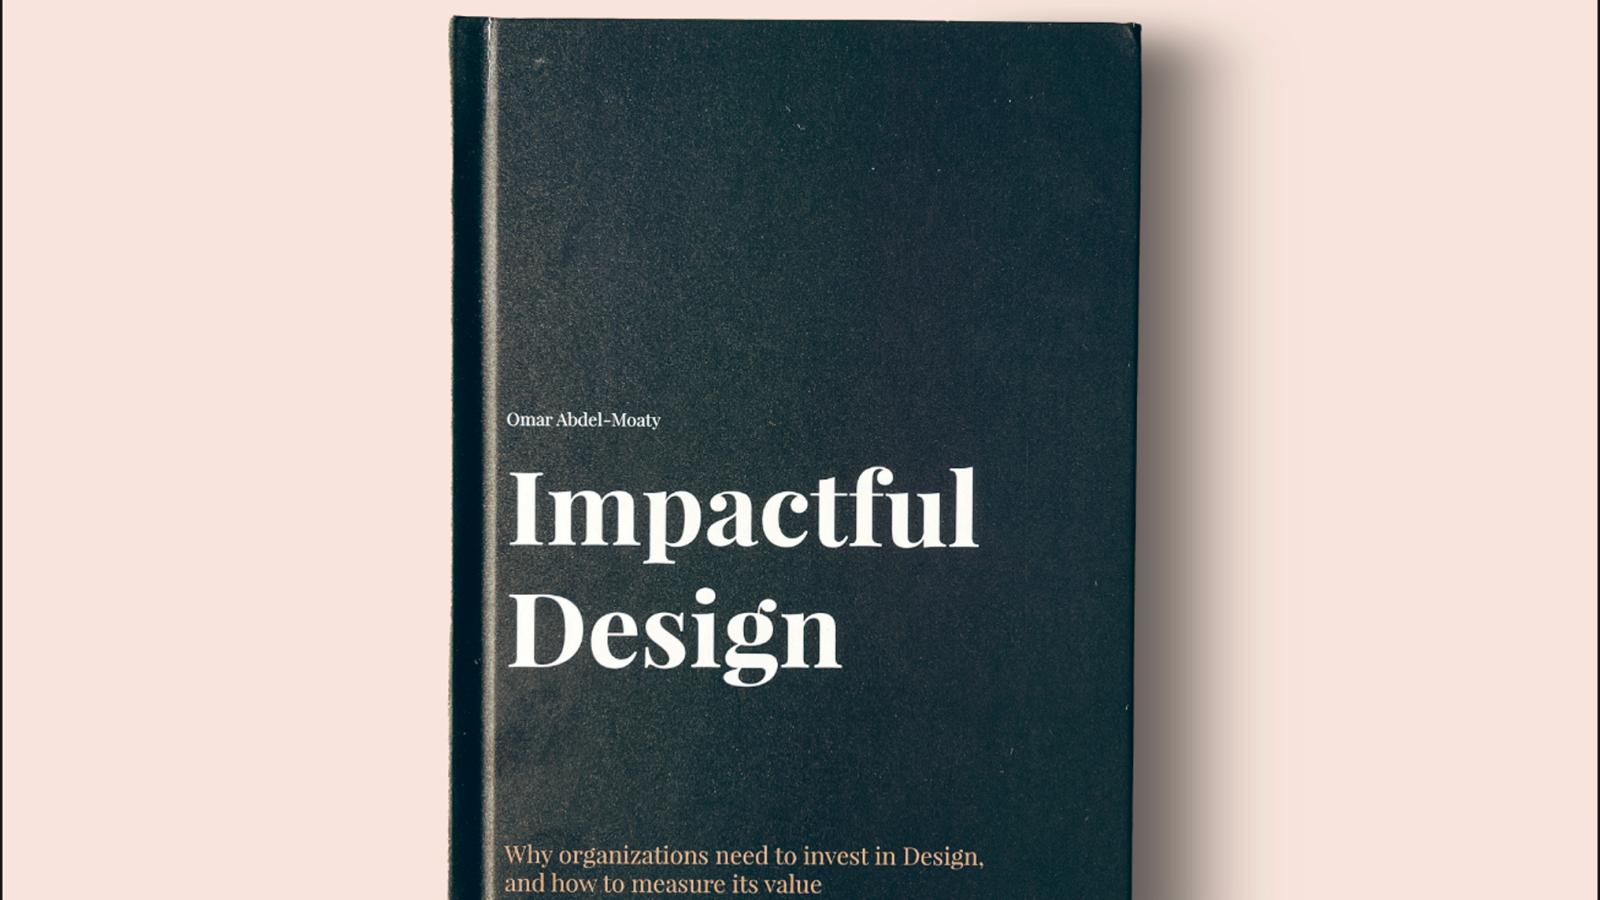 Buchcover von der Masterarbeit von Omar Abdel Moaty: Impactful Design